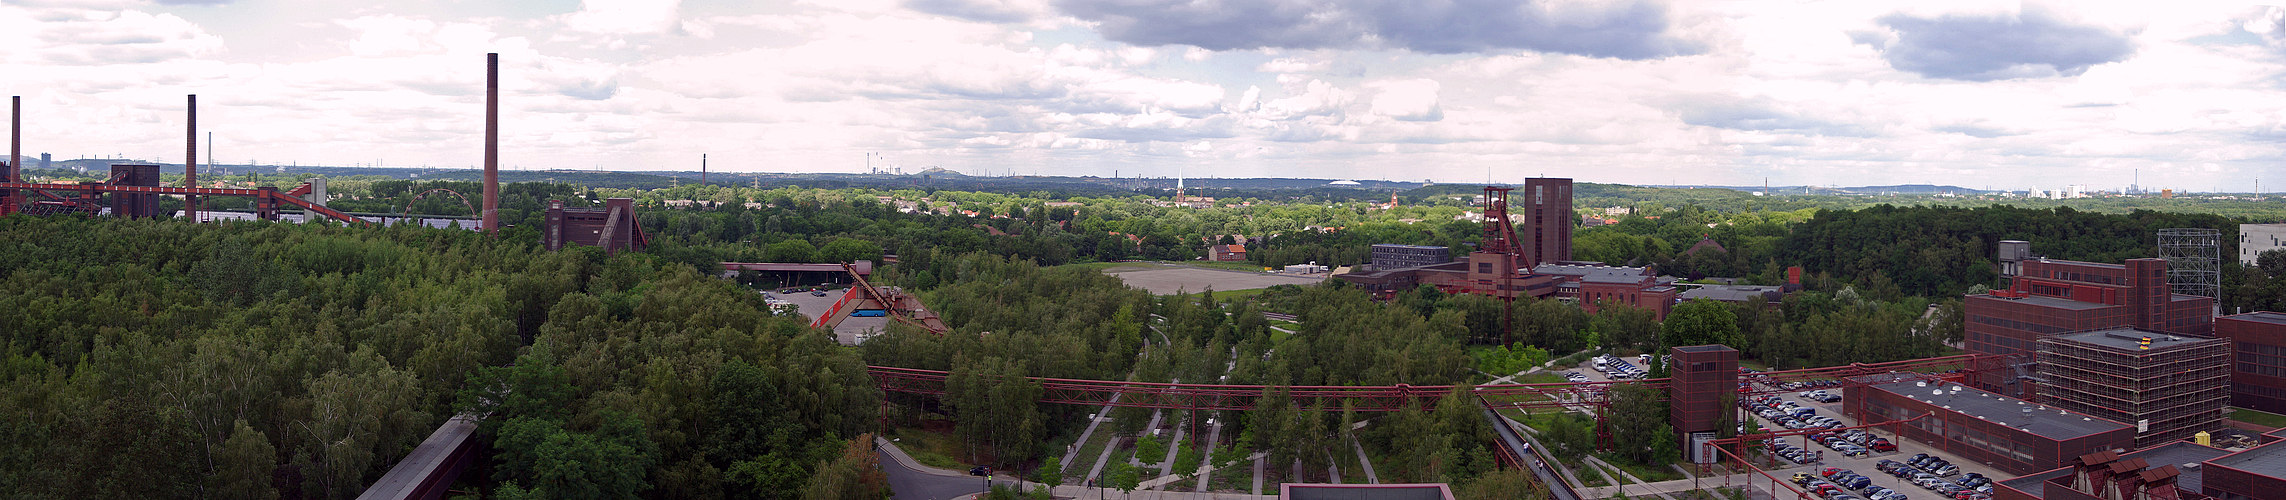 Panorama von der Aussichtsplattform im Zollverein